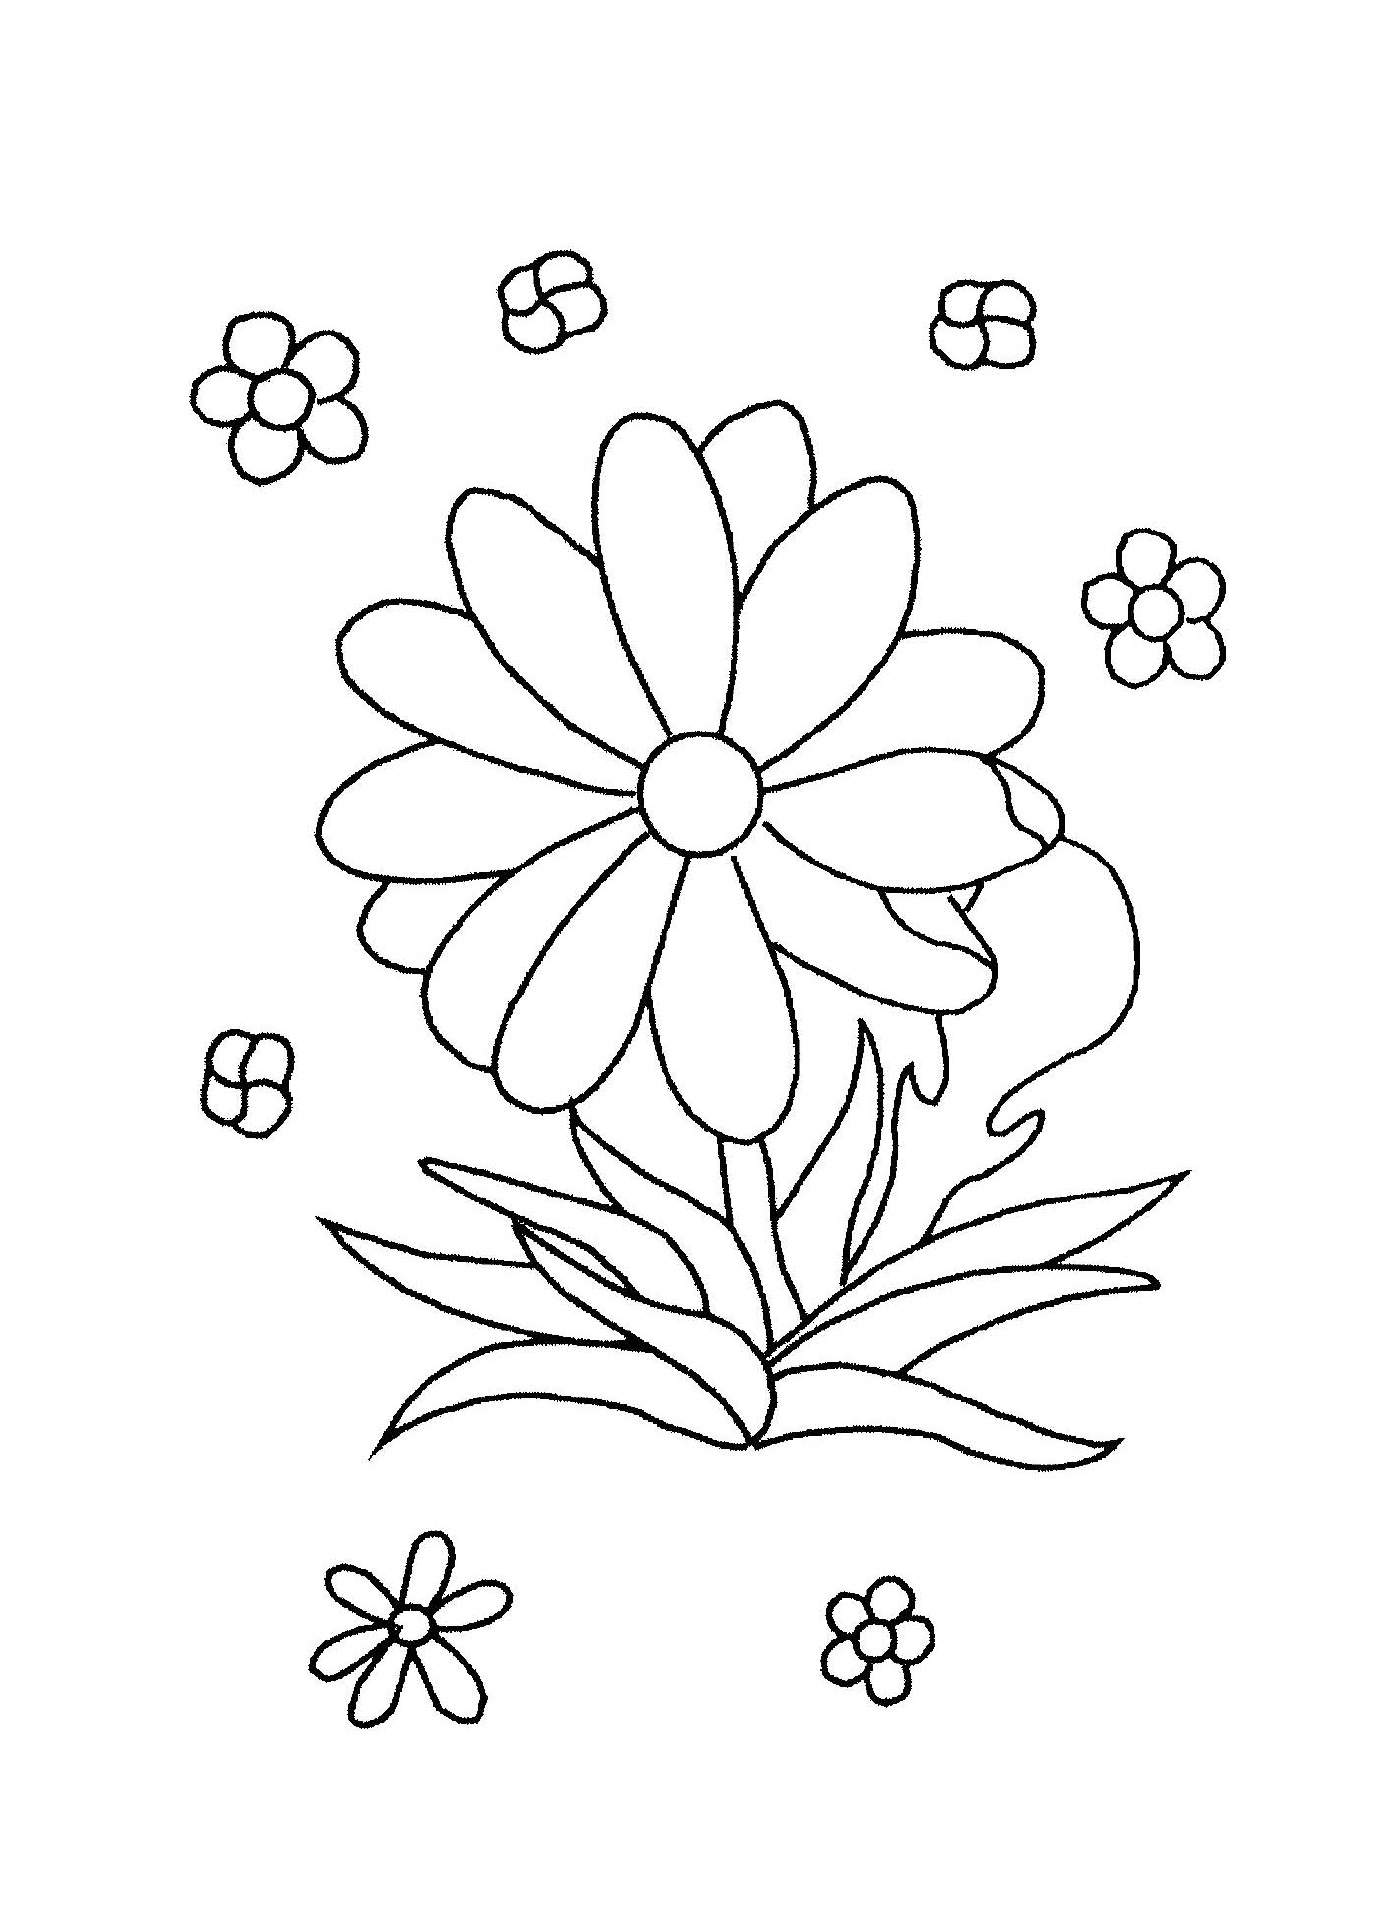  Eine einfache und einfache Blume für Kinder 